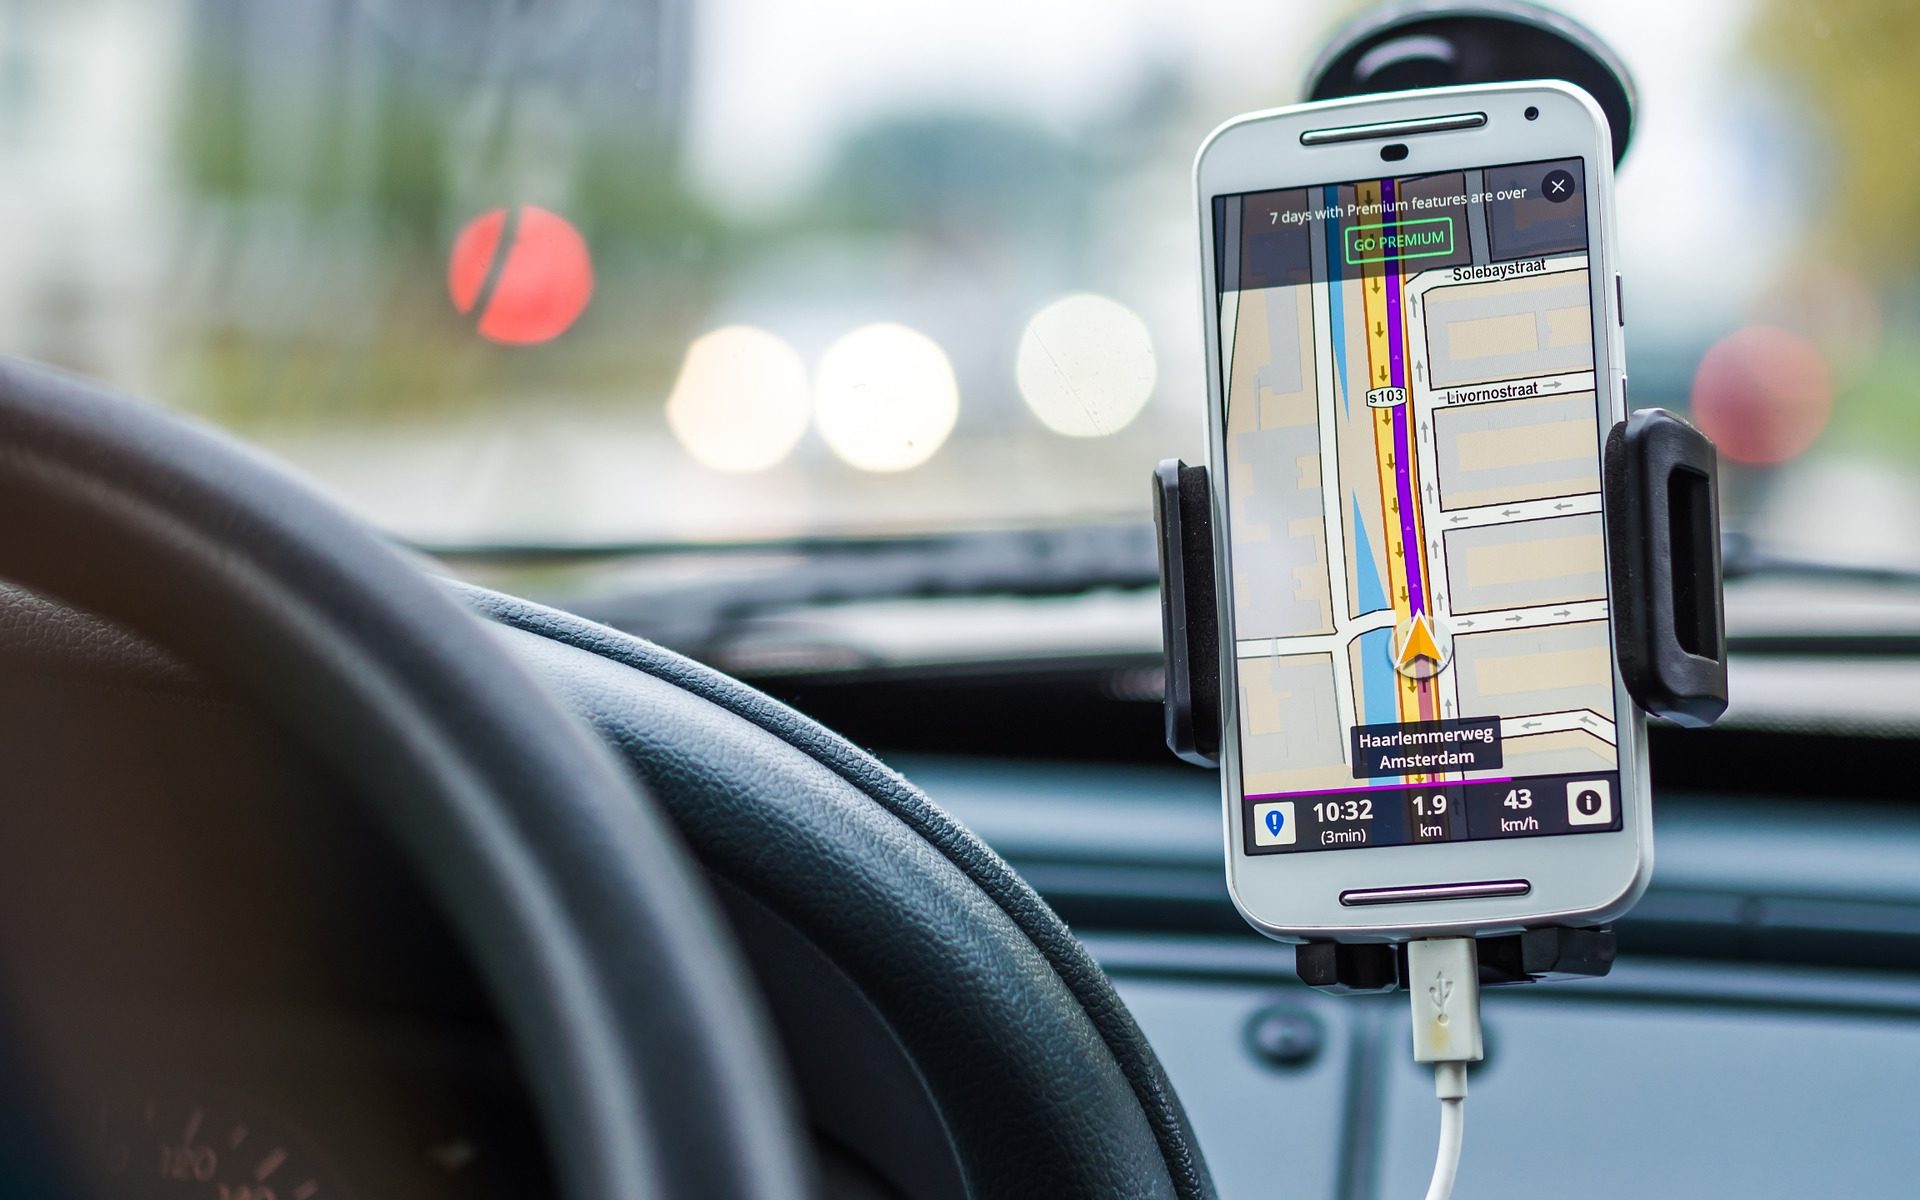 La Campaña de Luchemos por la Vida: “El celular al volante mata” recuerda los datos de una encuesta preocupante